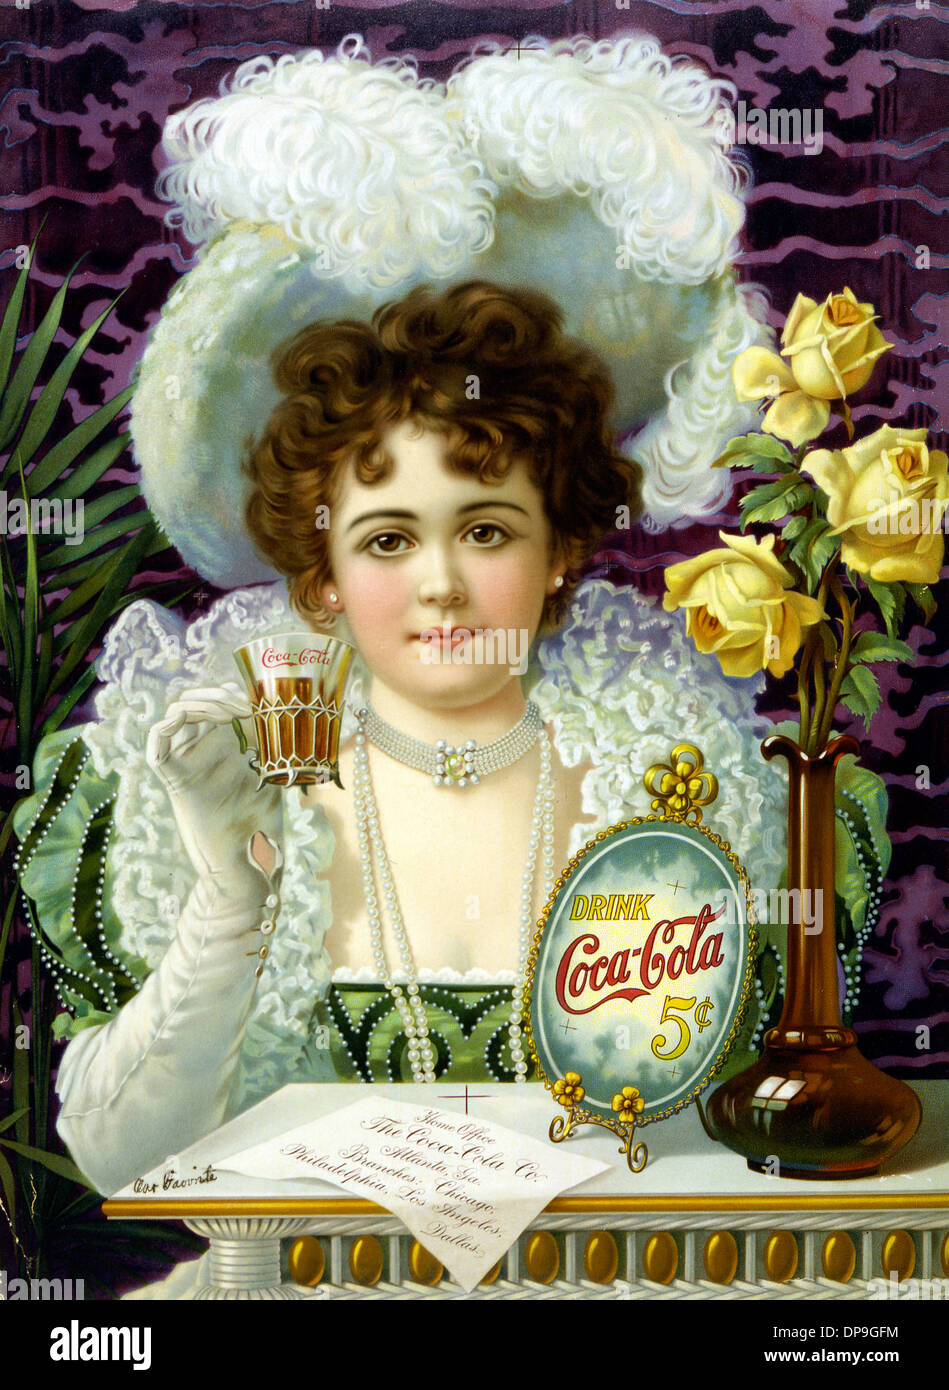 Beba Coca-Cola 5 centavos cartel histórico Foto de stock